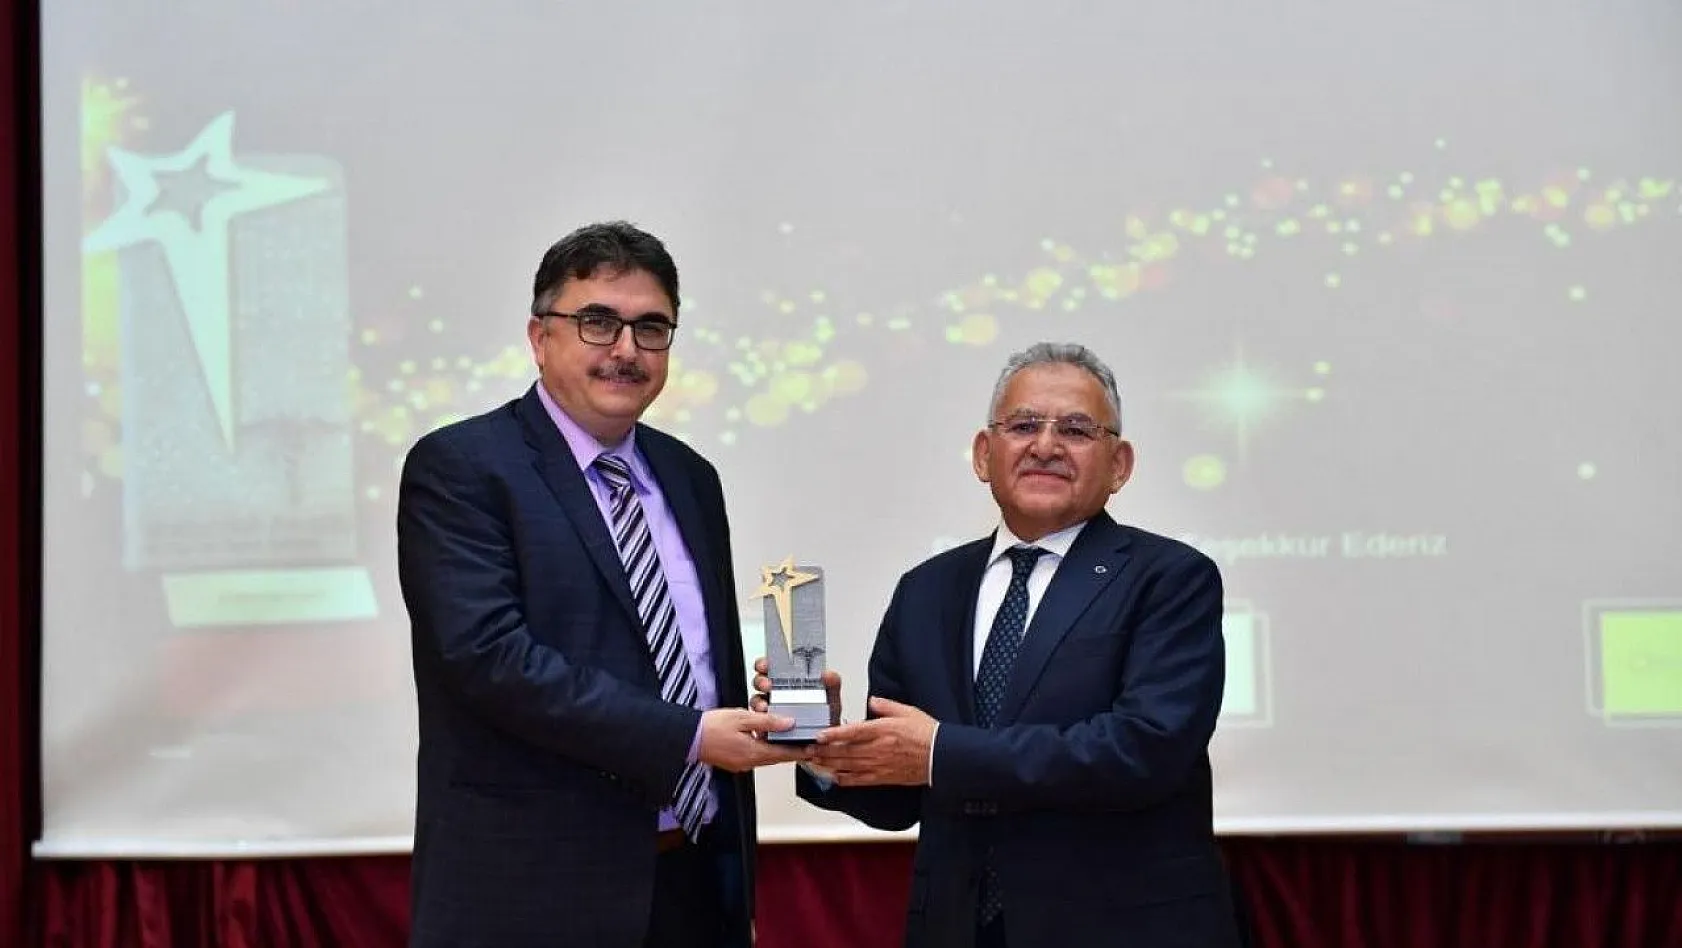 Büyükşehir'in Hospice Projesi'ne 'yılın yenilikçi uygulaması' ödülü